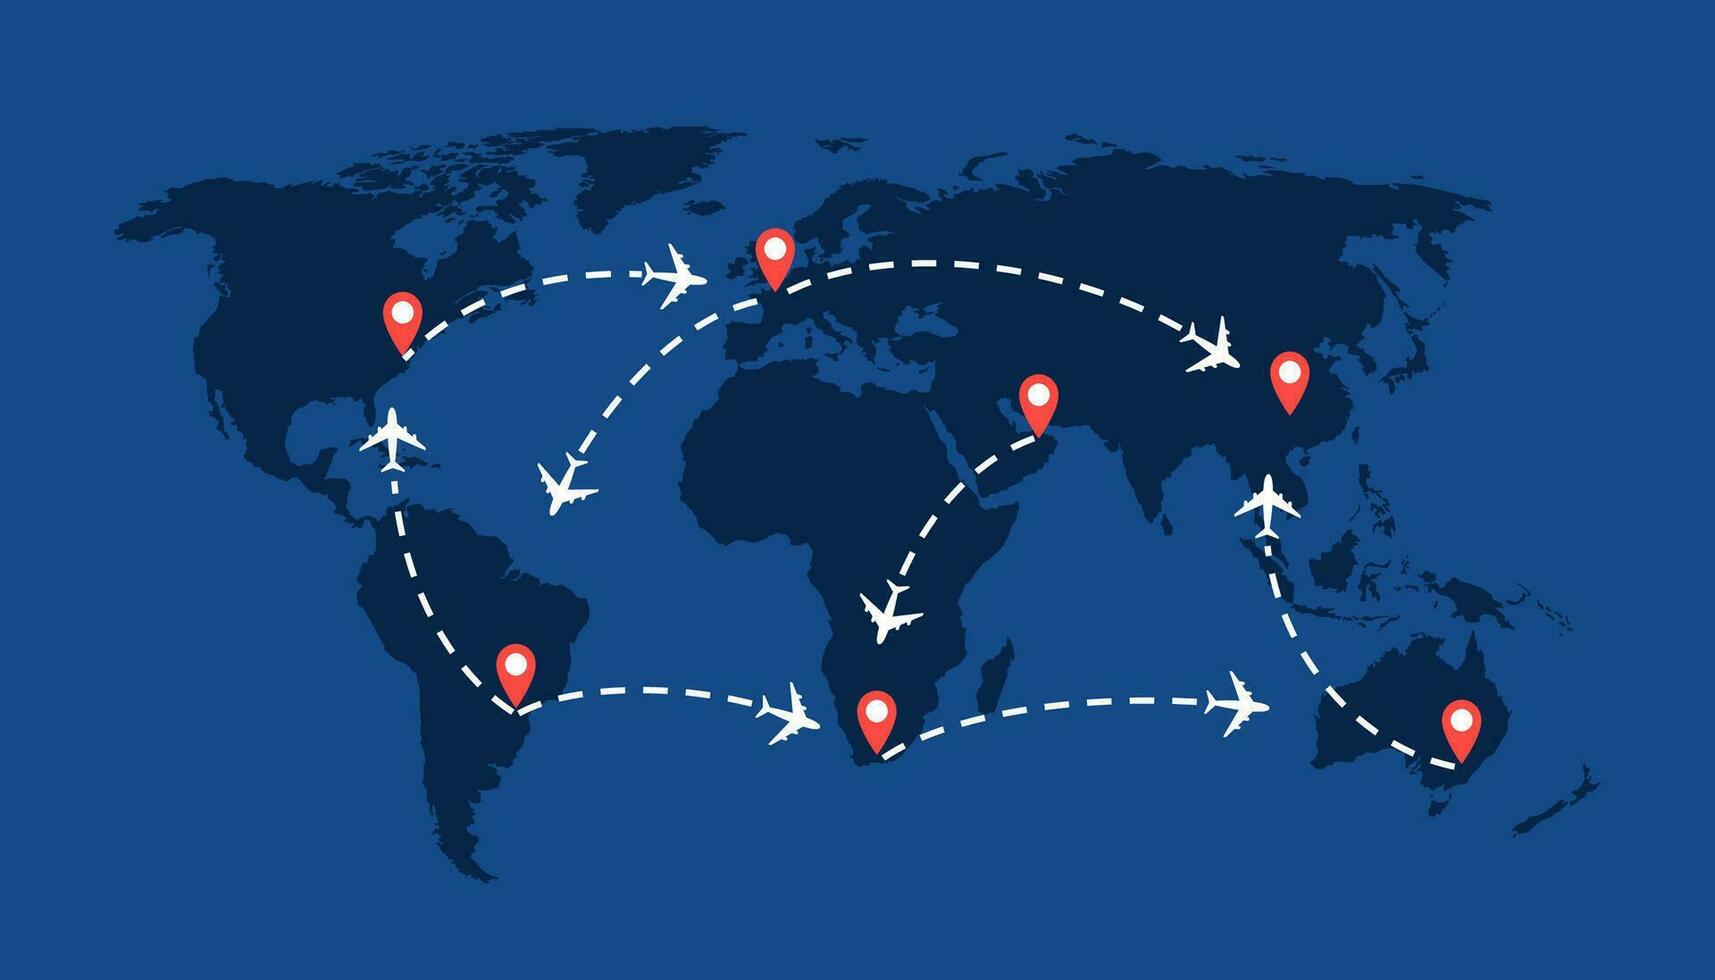 mondo viaggio carta geografica con aeroplani, volo itinerari e perni marcatore. vettore illustrazione.